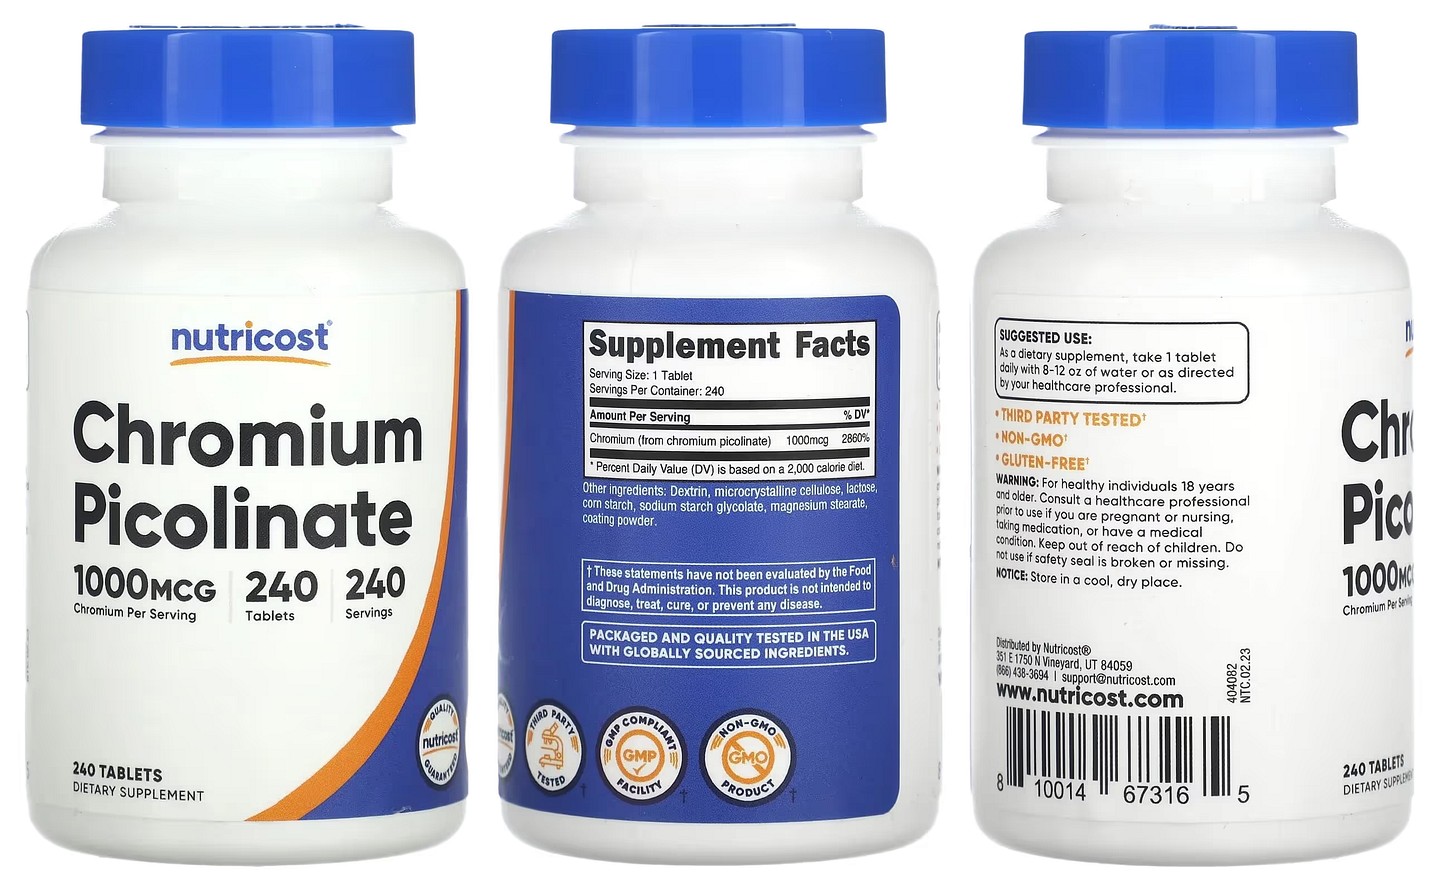 Nutricost, Chromium Picolinate packaging